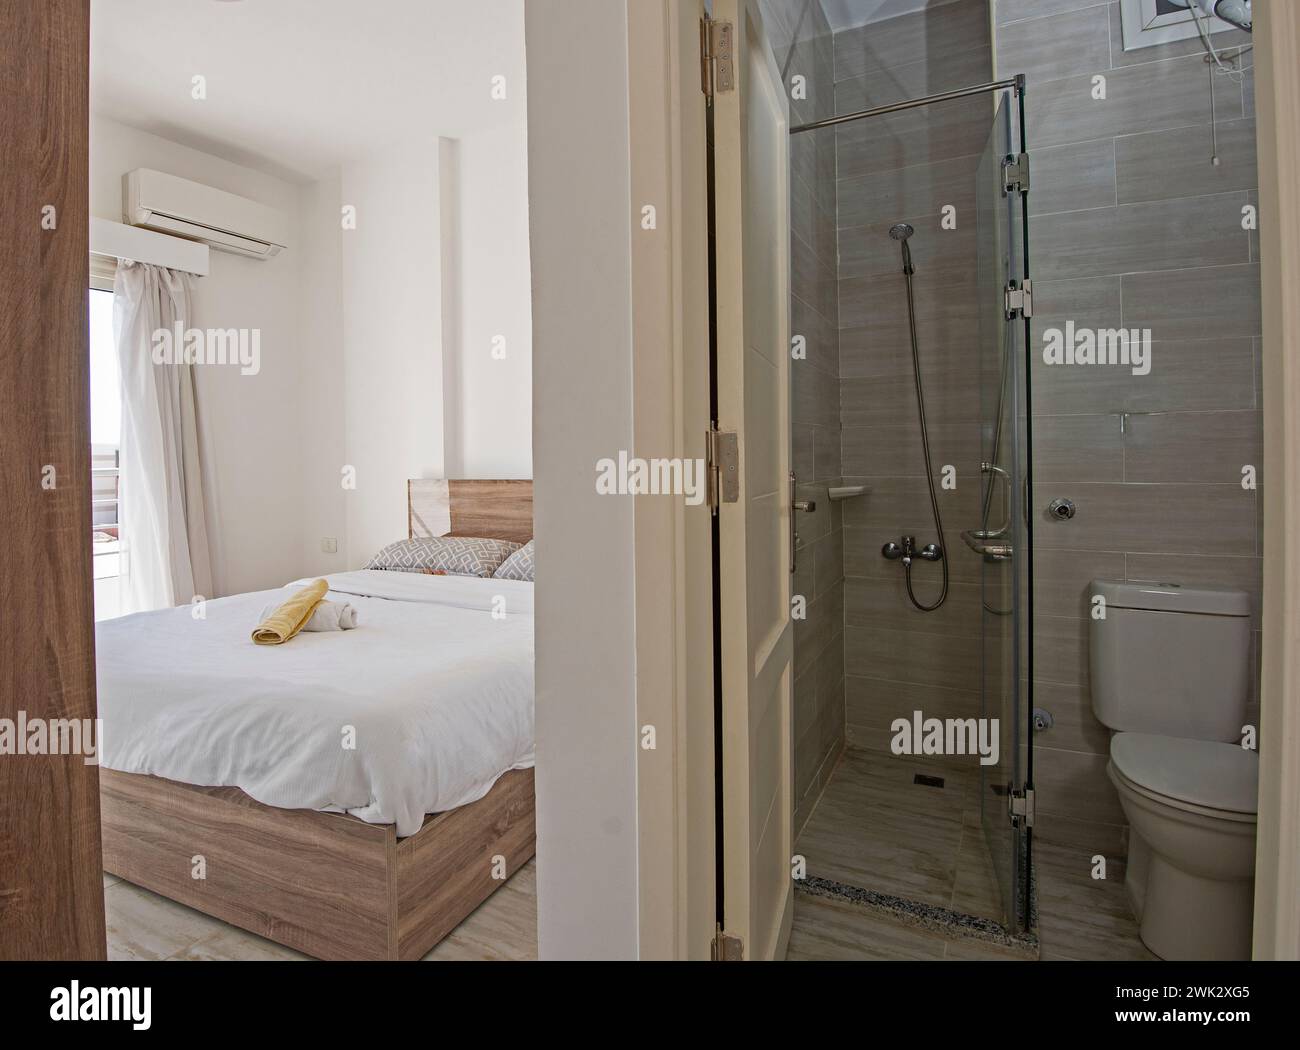 Inneneinrichtung Einrichtung Einrichtung von luxuriösem Schauhaus en Suite Schlafzimmer mit Möbeln und Doppelbett mit Bad Stockfoto